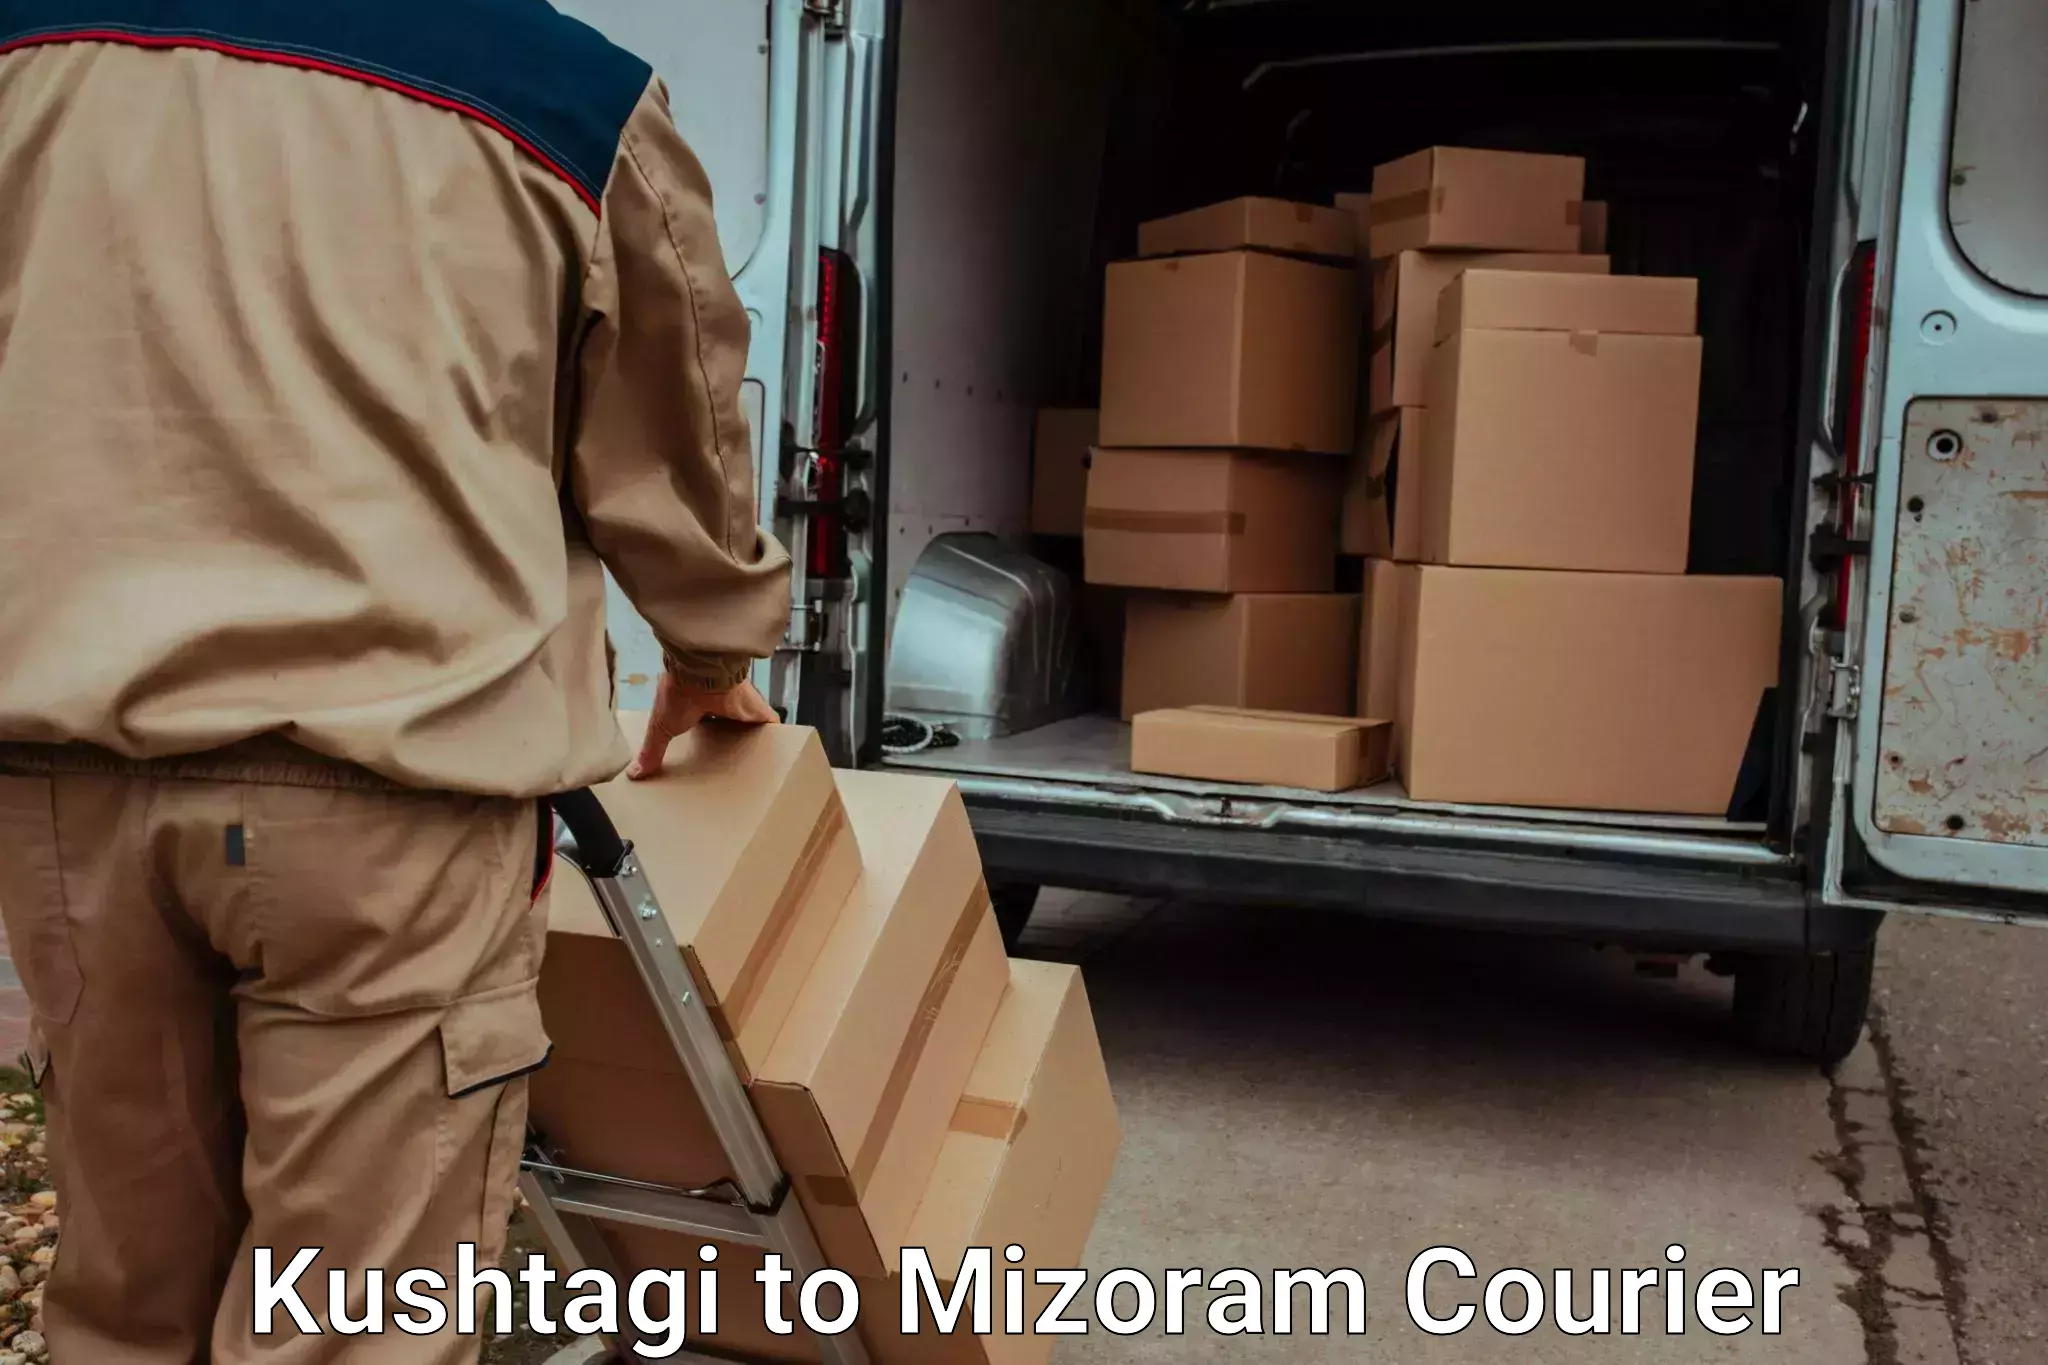 Luggage dispatch service Kushtagi to Khawzawl